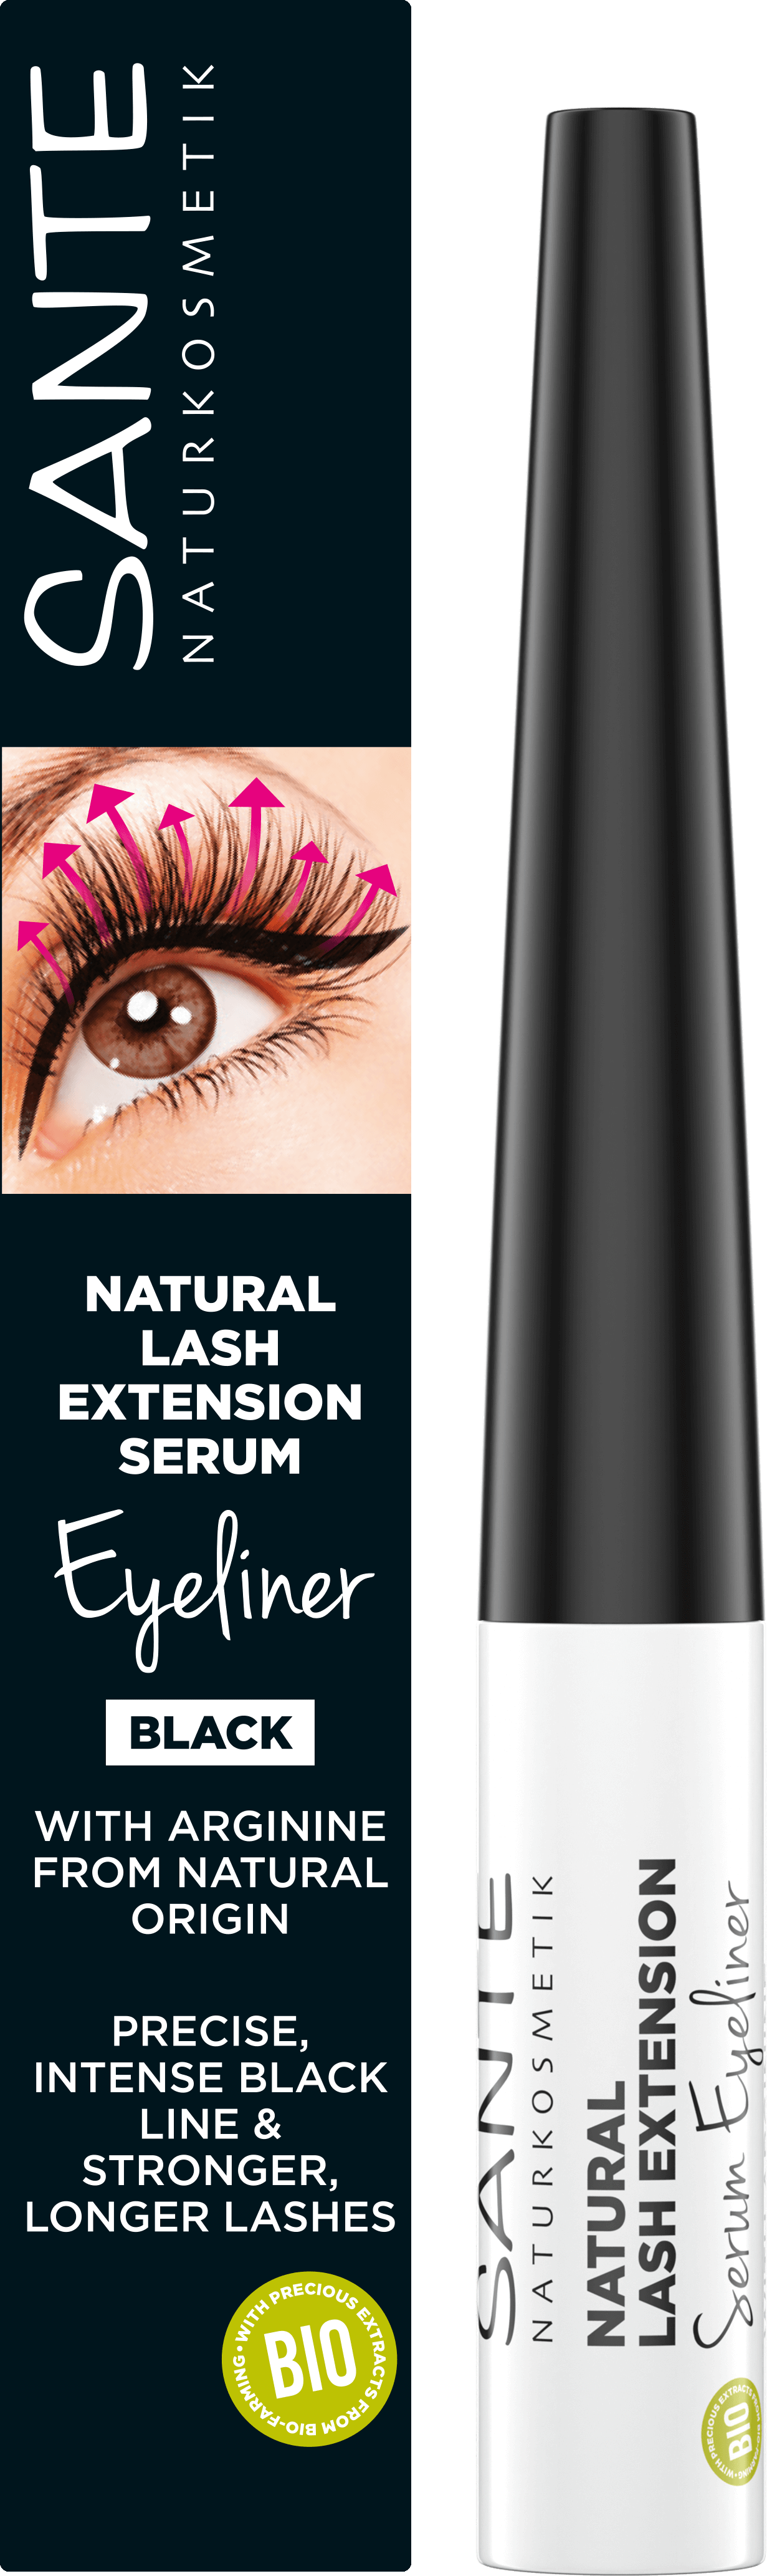 SANTE Lash Naturkosmetik Serum Extension Eyeliner Natural |